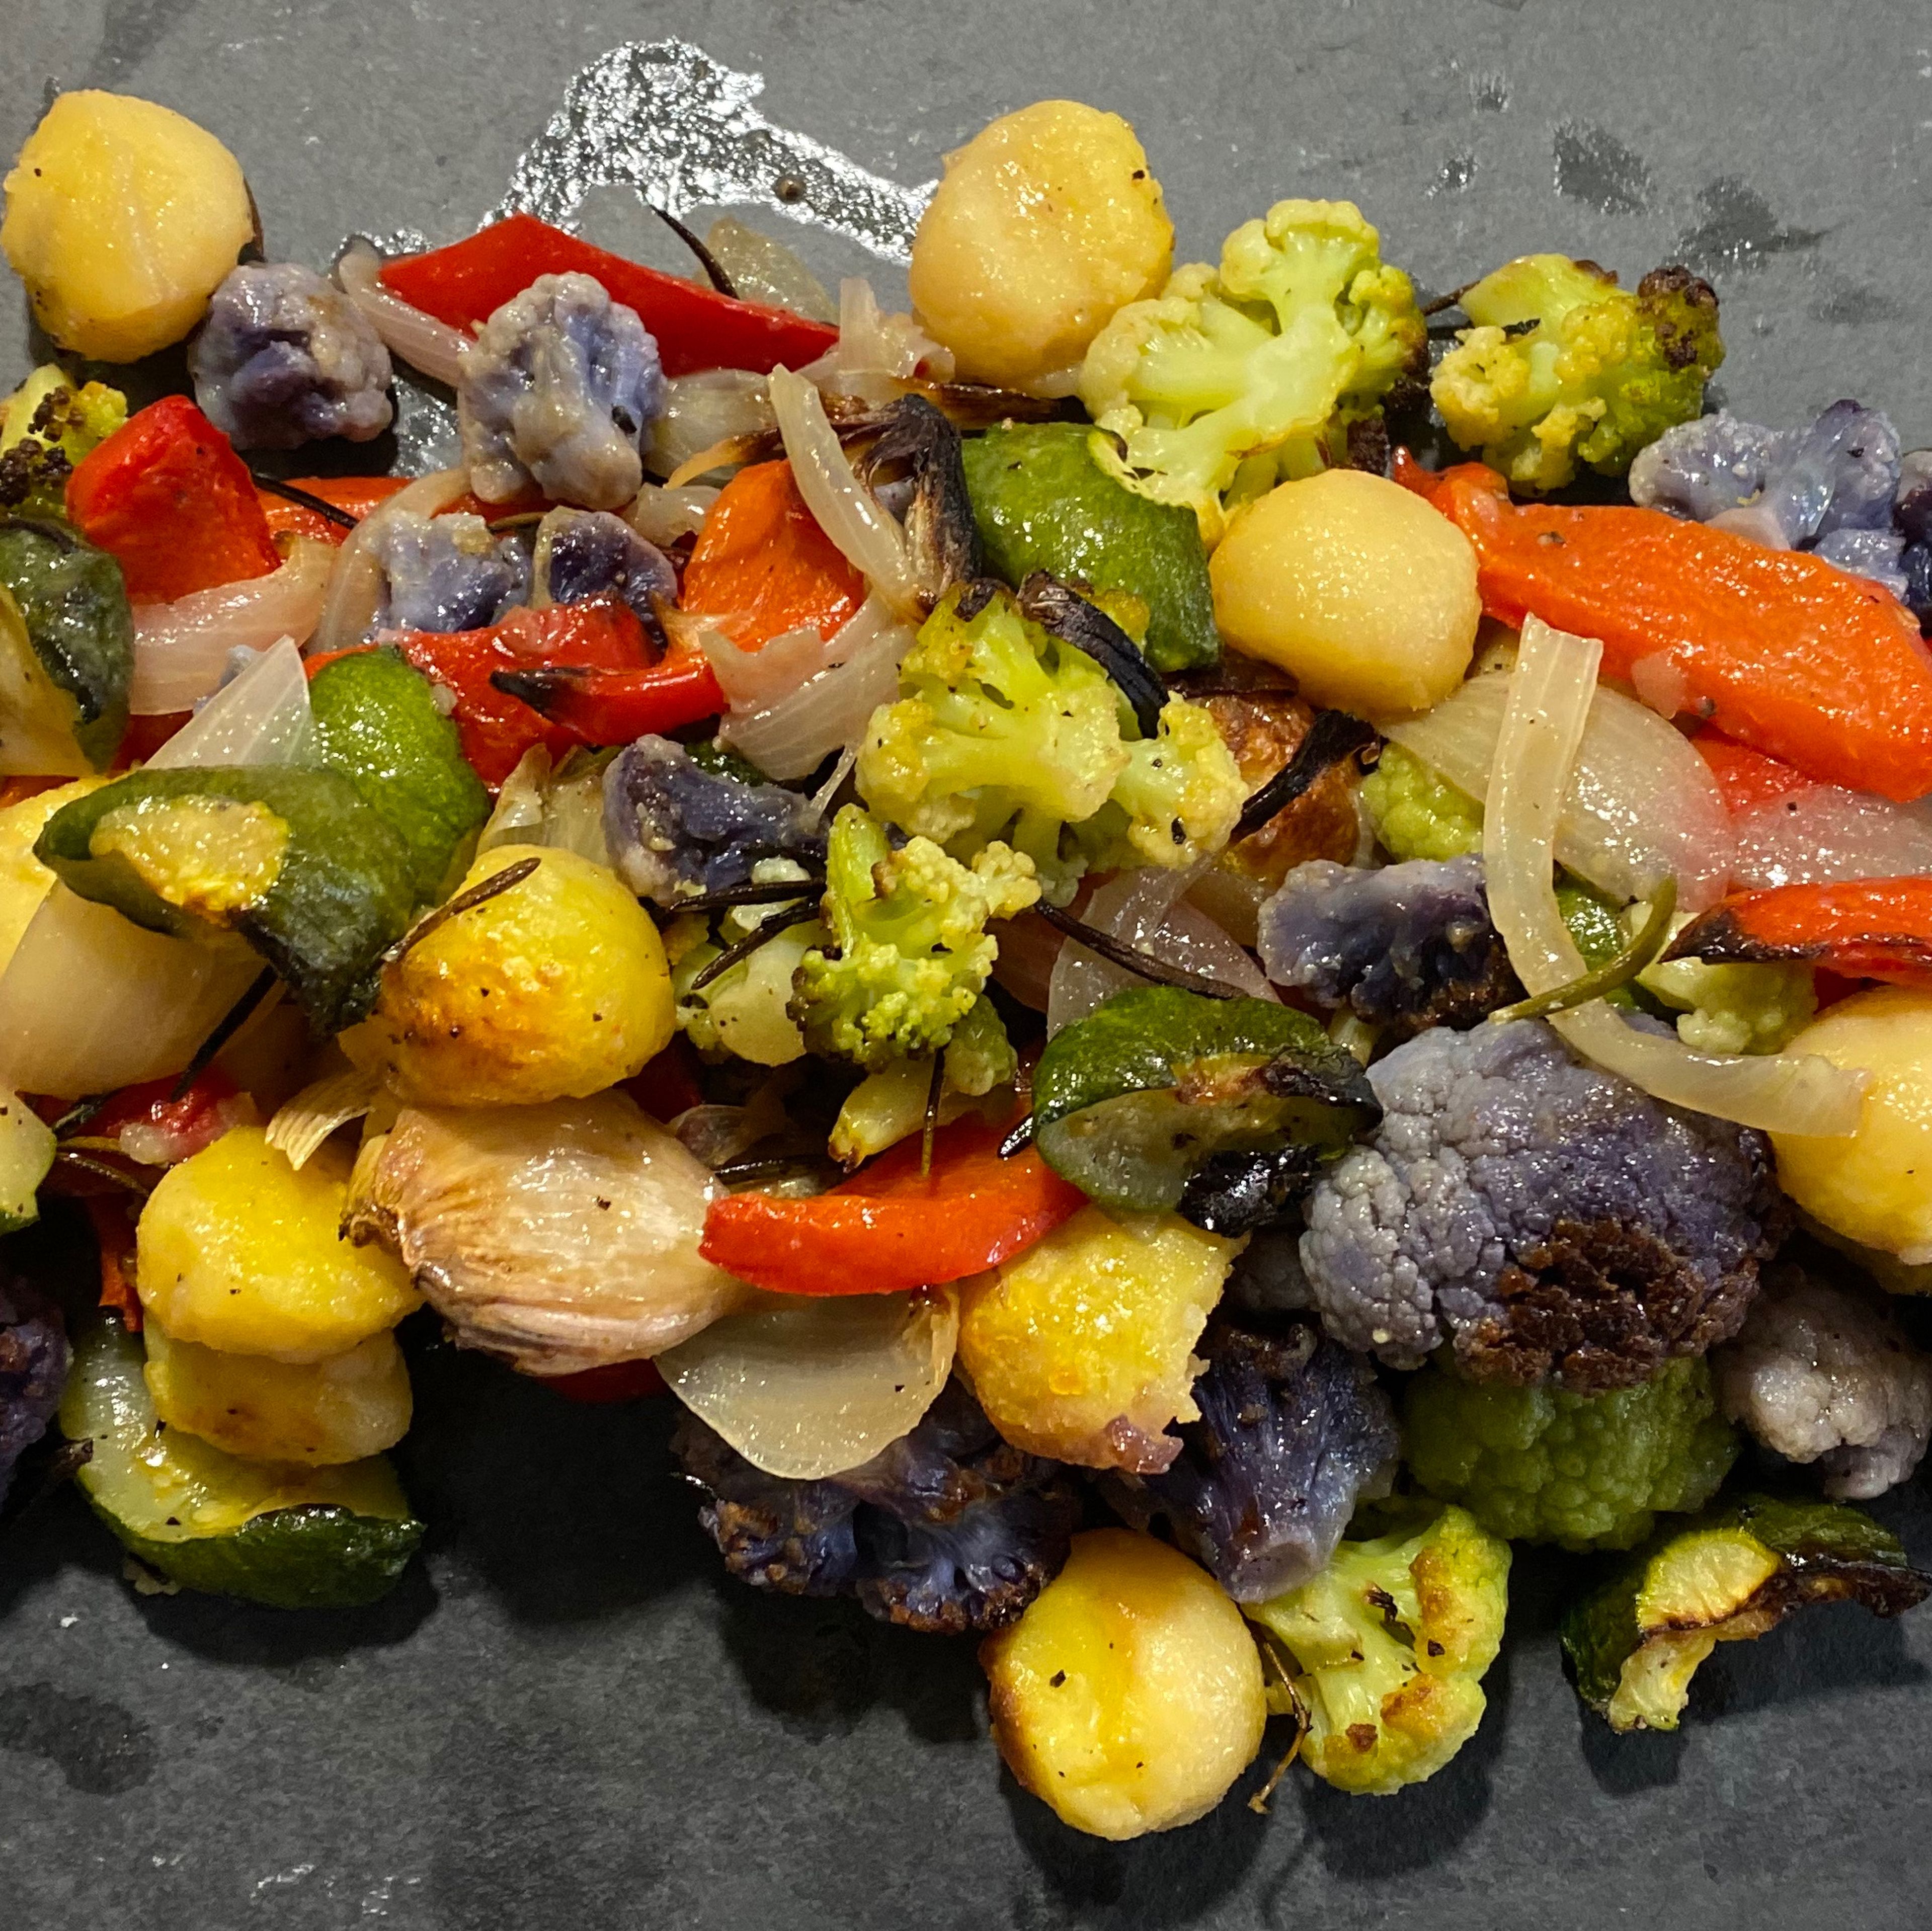 Den Backofen auf 250 Grad vorheizen ( Ober-/Unterhitze oder Umluft). Die Auflaufform mit dem Gemüse mittig in den Ofen schieben. Das Gemüse solange schmoren bis die gewünschte Farbe und Konsistenz erreicht ist. In der Regel langen 10-15 Minuten.